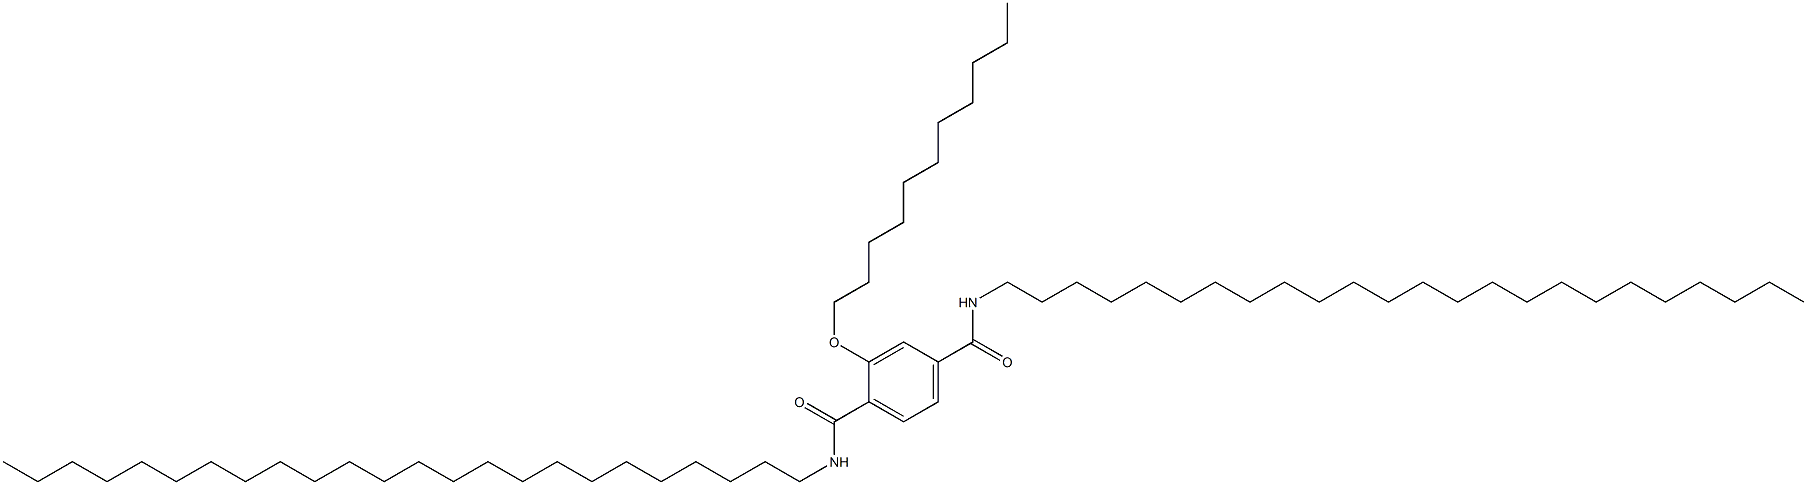 2-(Undecyloxy)-N,N'-ditetracosylterephthalamide|